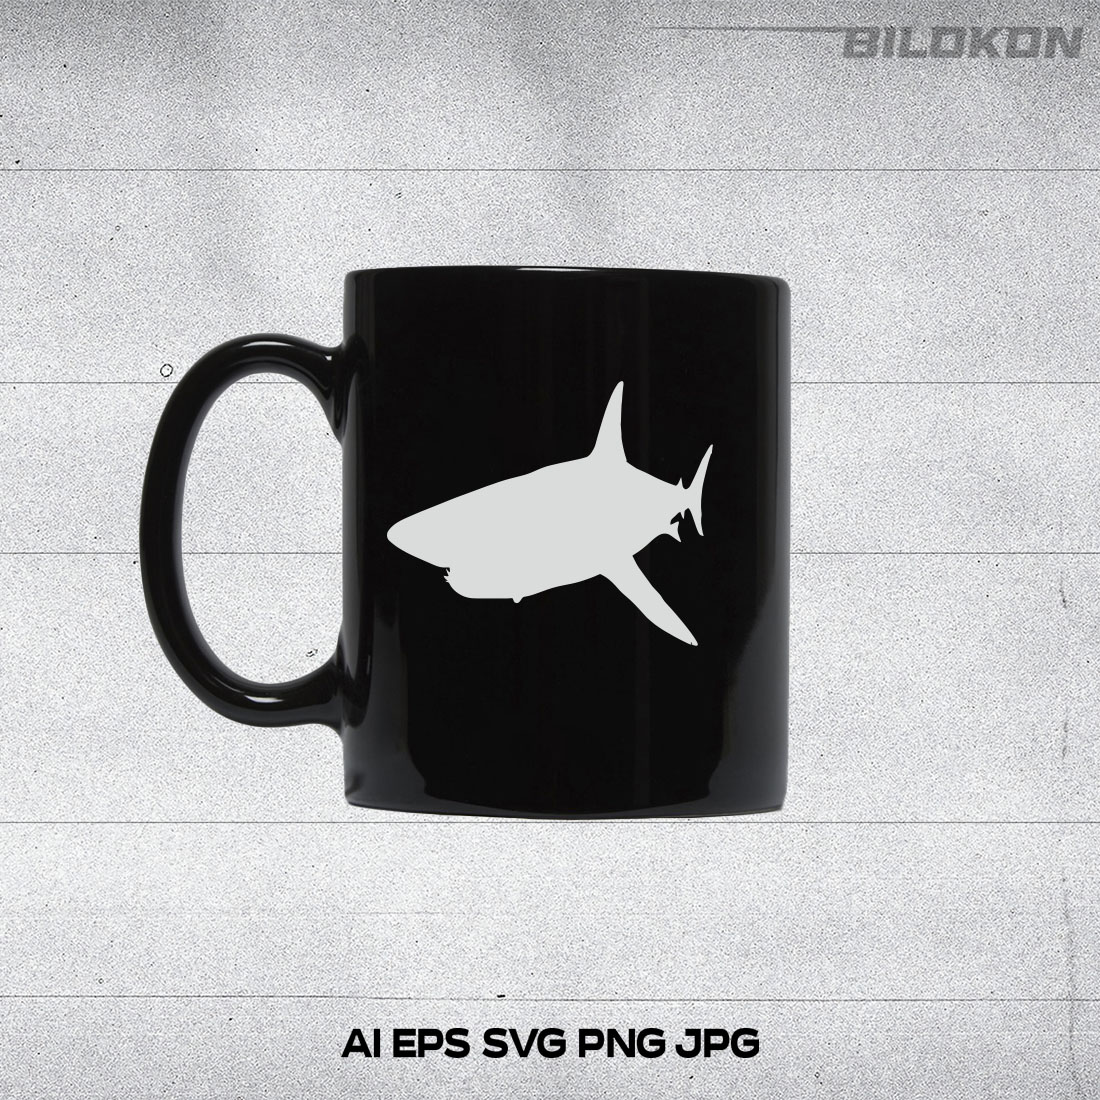 Black coffee mug with a white shark on it.